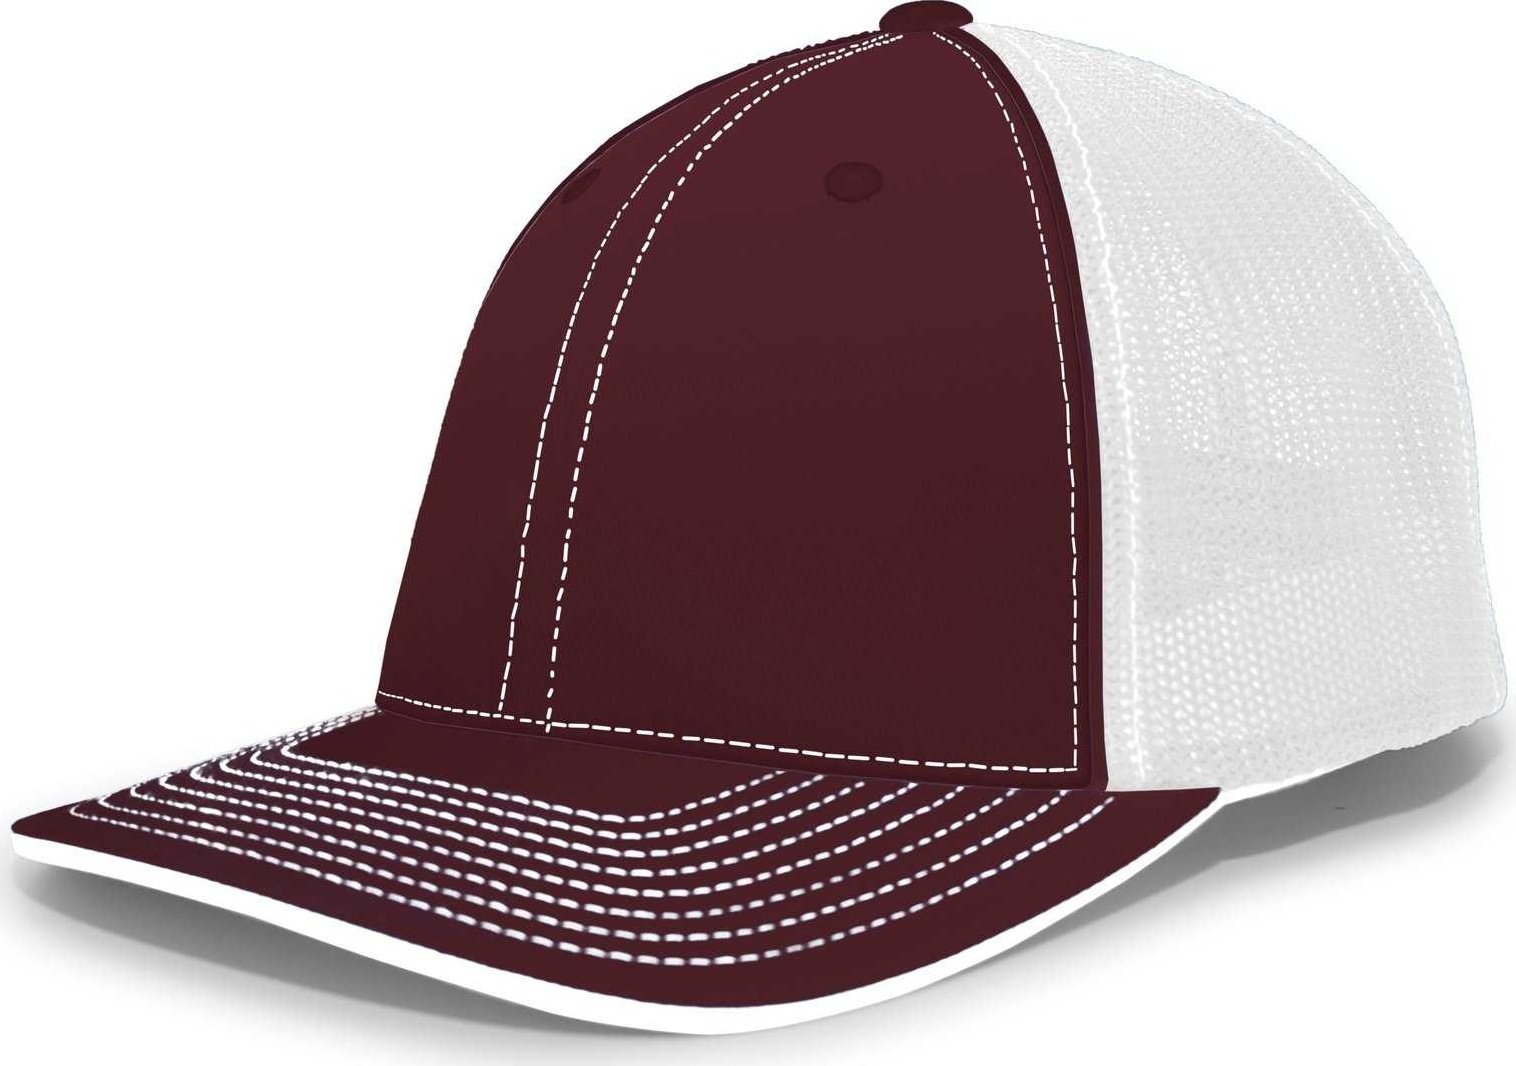 Pacific Headwear 404M Trucker Flexfit Cap - Maroon White - HIT a Double